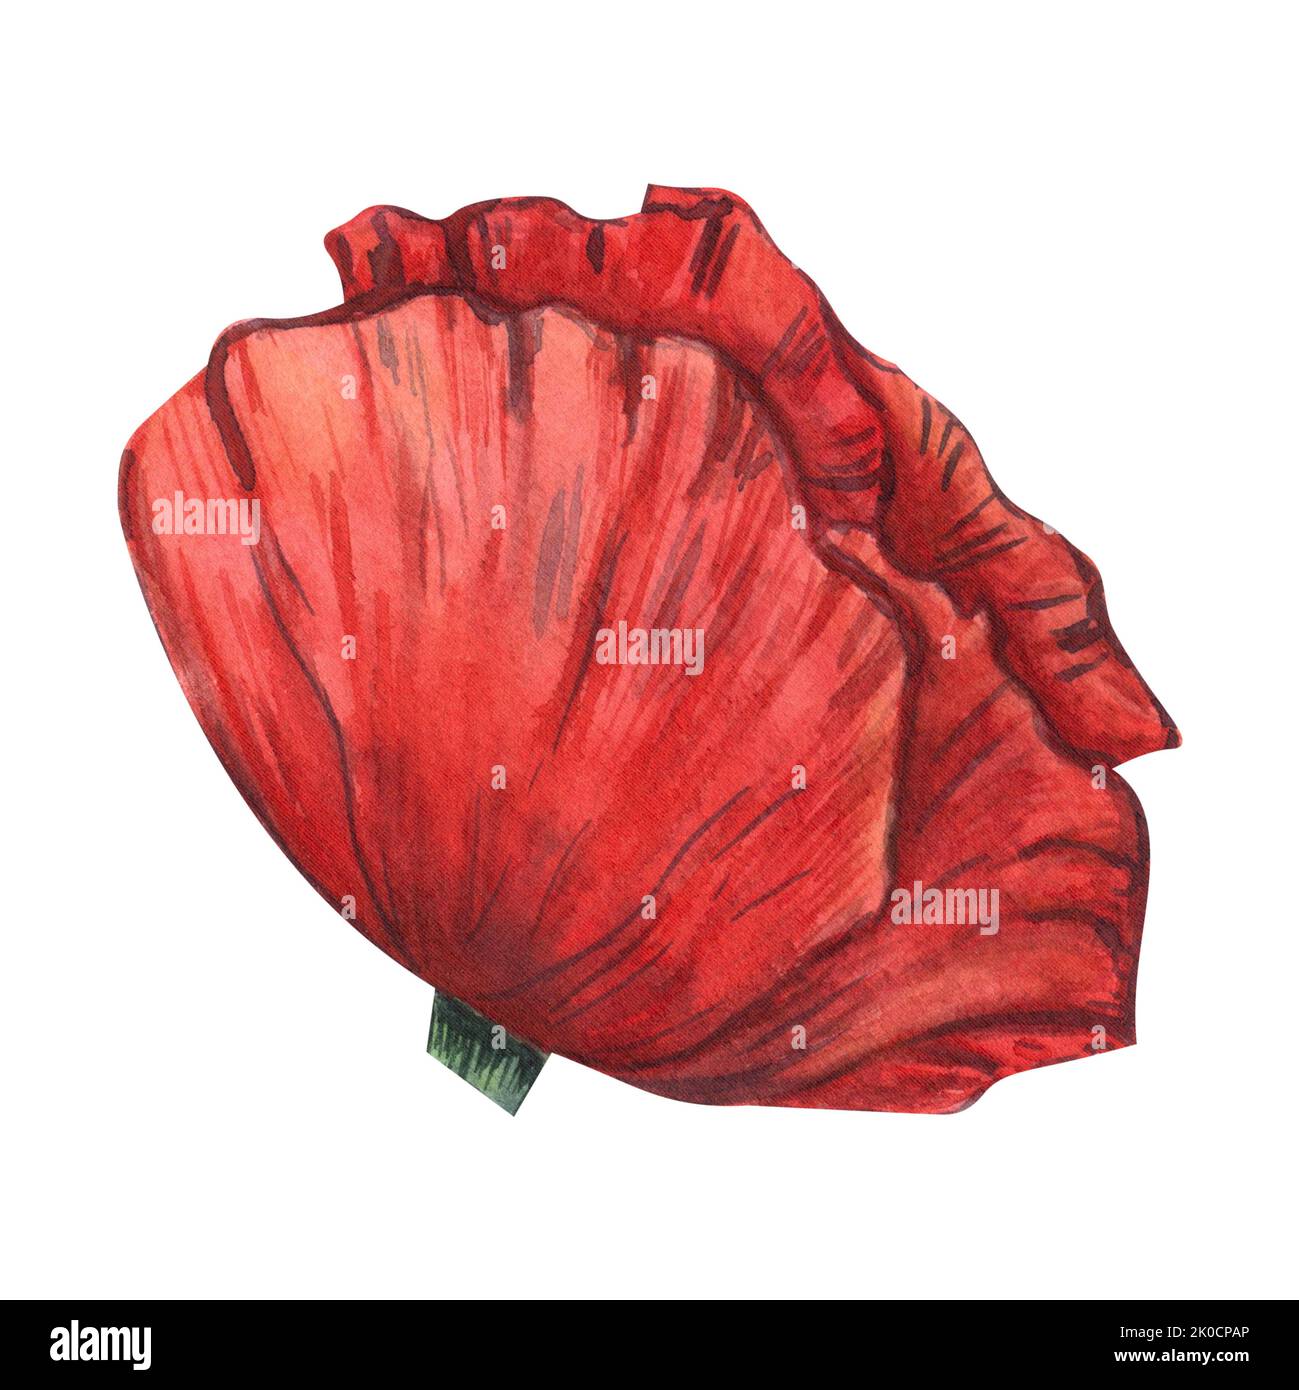 Une fleur de pavot rouge peinte en aquarelle, isolée sur fond blanc. Pour le design, les invitations, les cartes postales, l'emballage Banque D'Images